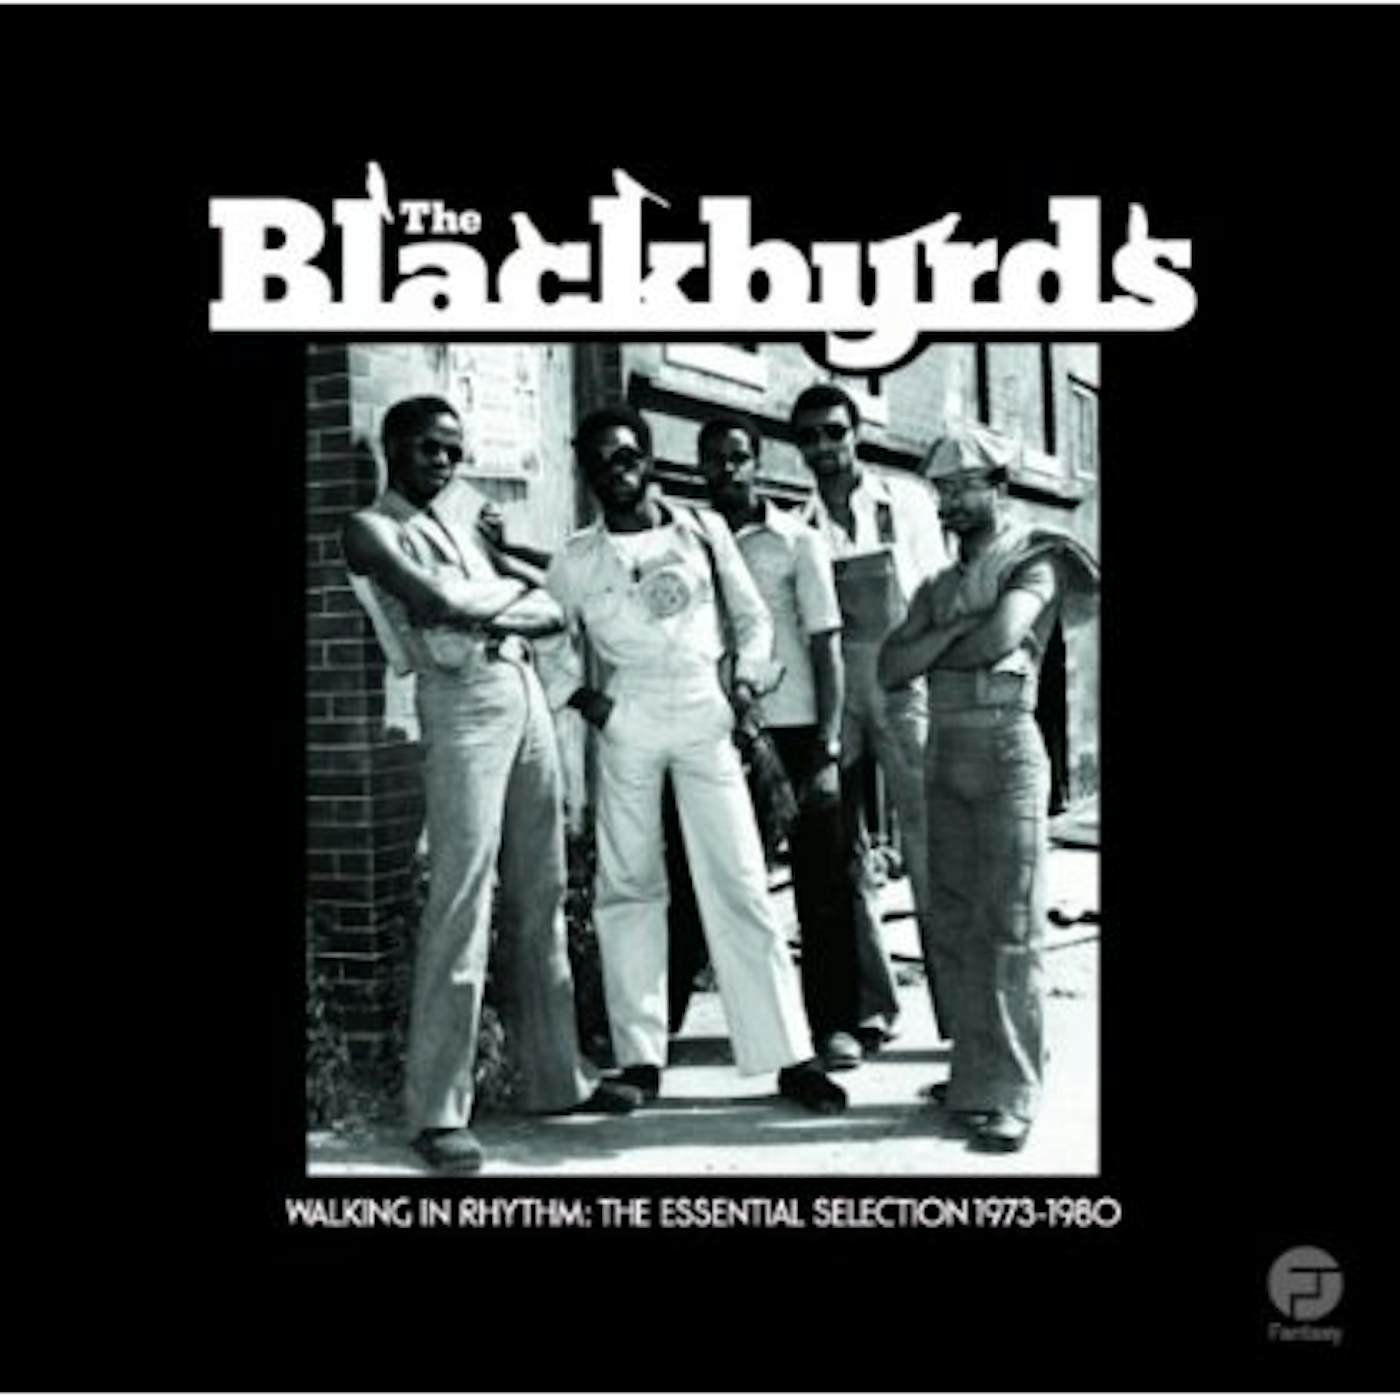 The Blackbyrds WALKING IN RHYTHM: ESSENTIAL SELECTION 1973 -1980 CD